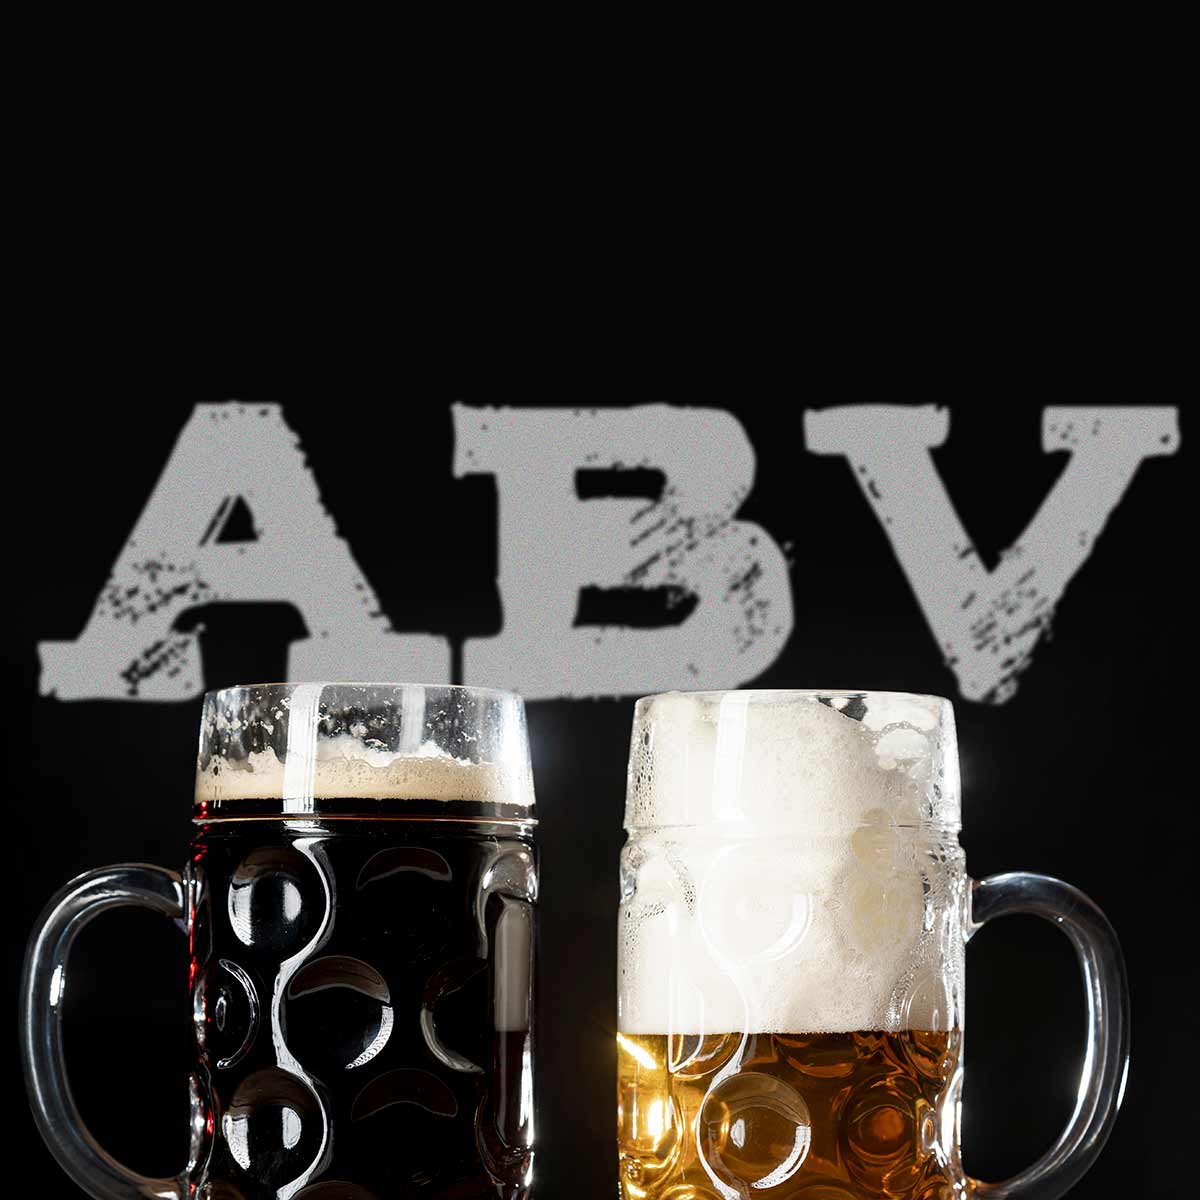 Para calcular el grado alcohólico o ABV al elaborar cerveza existen diversas fórmulas y referencias a emplear según el tipo de cerveza a conseguir.